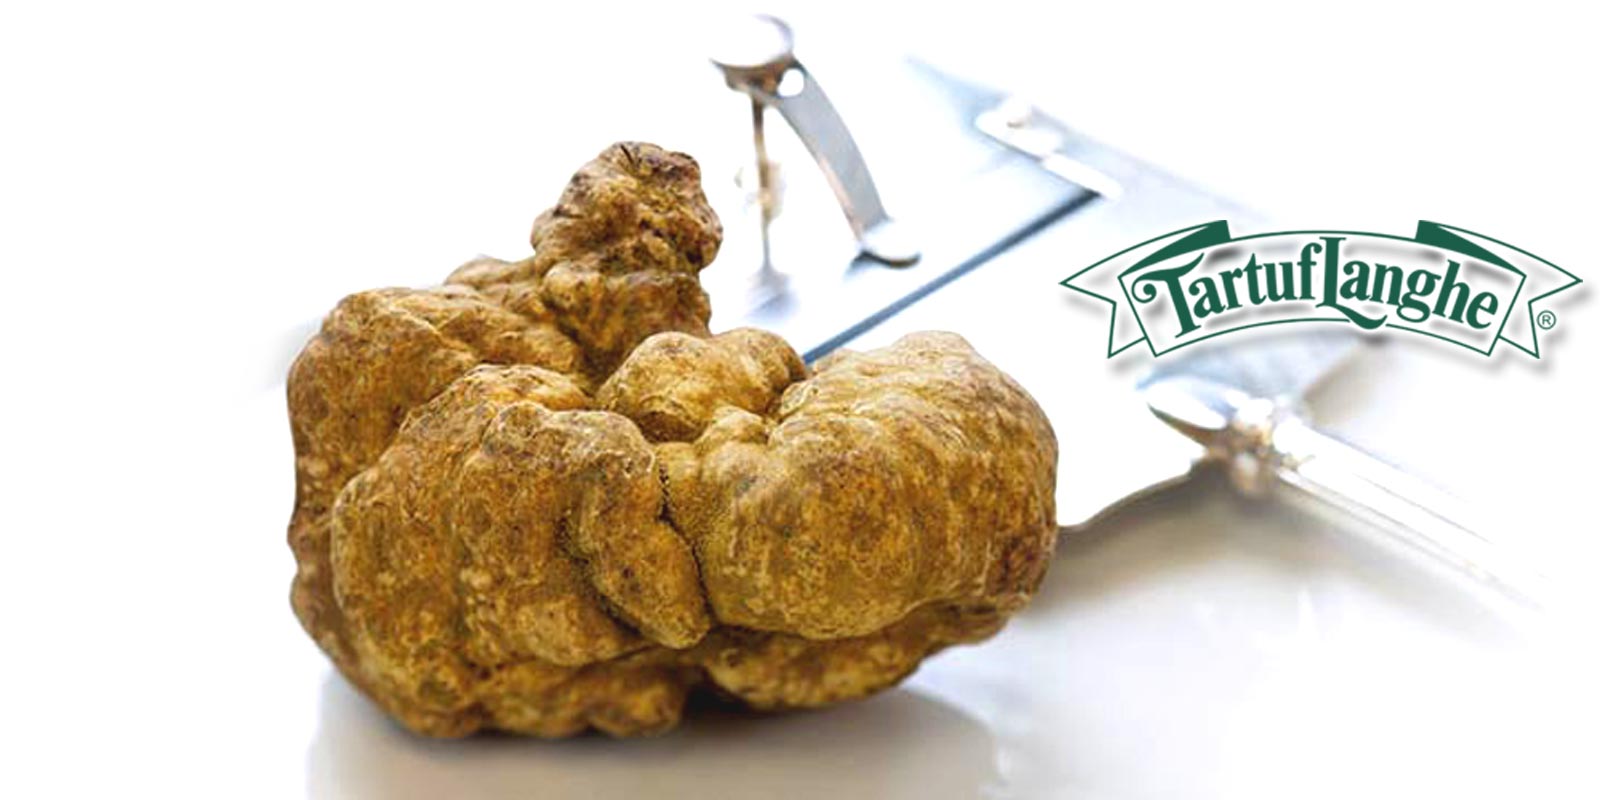 Produk Tartuflanghe Sejak 1968, Tartuflanghe telah menghasilkan dan mengedarkan produk truffle dan truffle. Mereka dicirikan oleh rasa yang tinggi dan kualiti pembuatan.